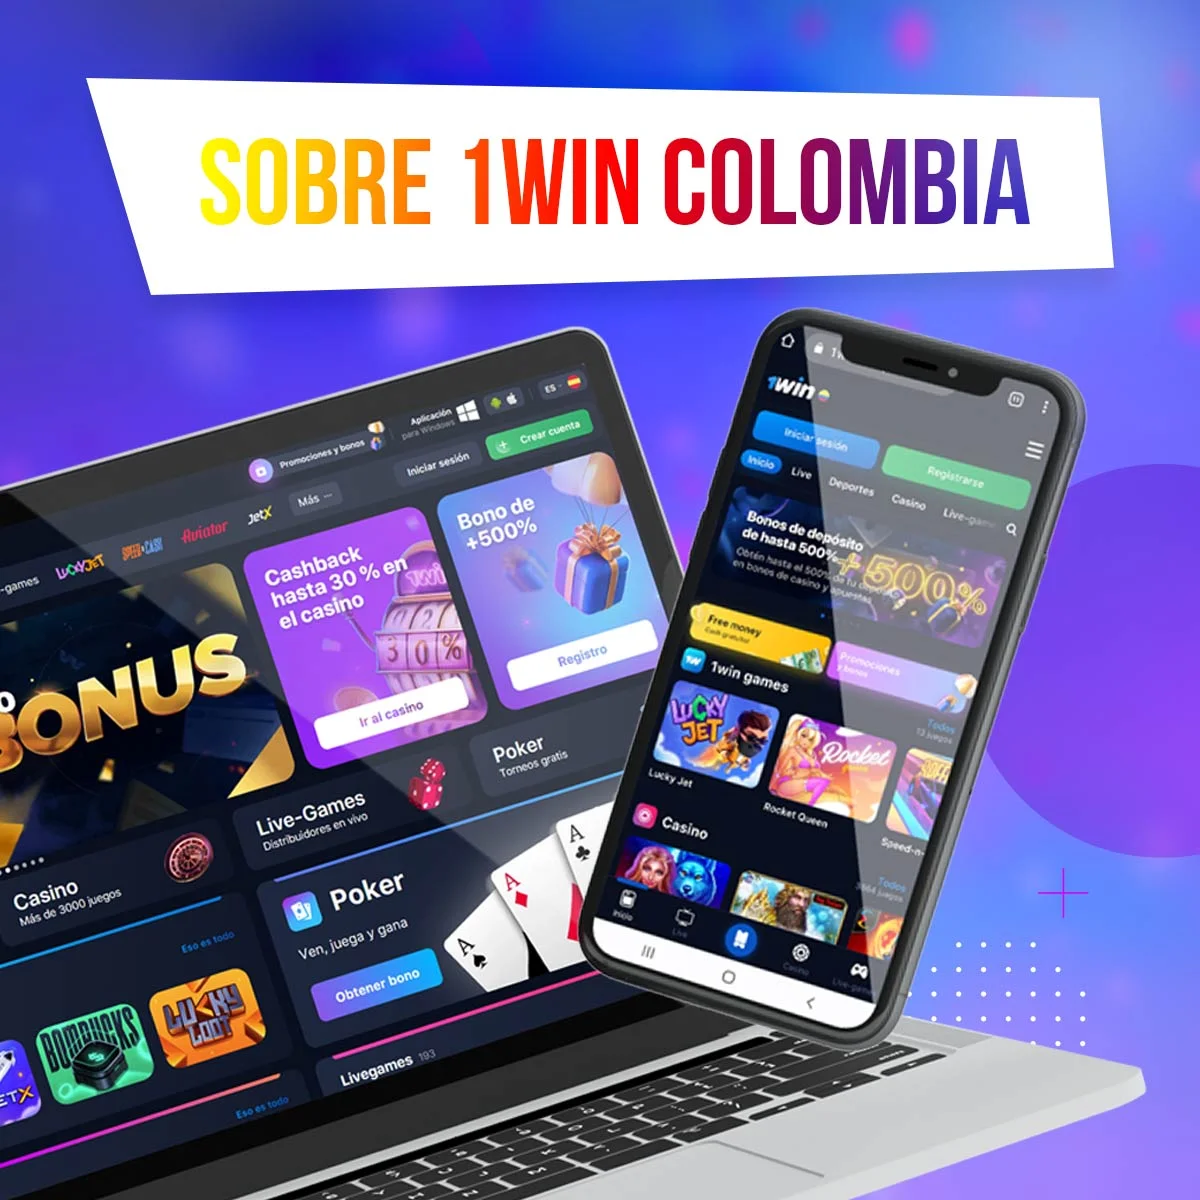 Información completa sobre 1win en Colombia